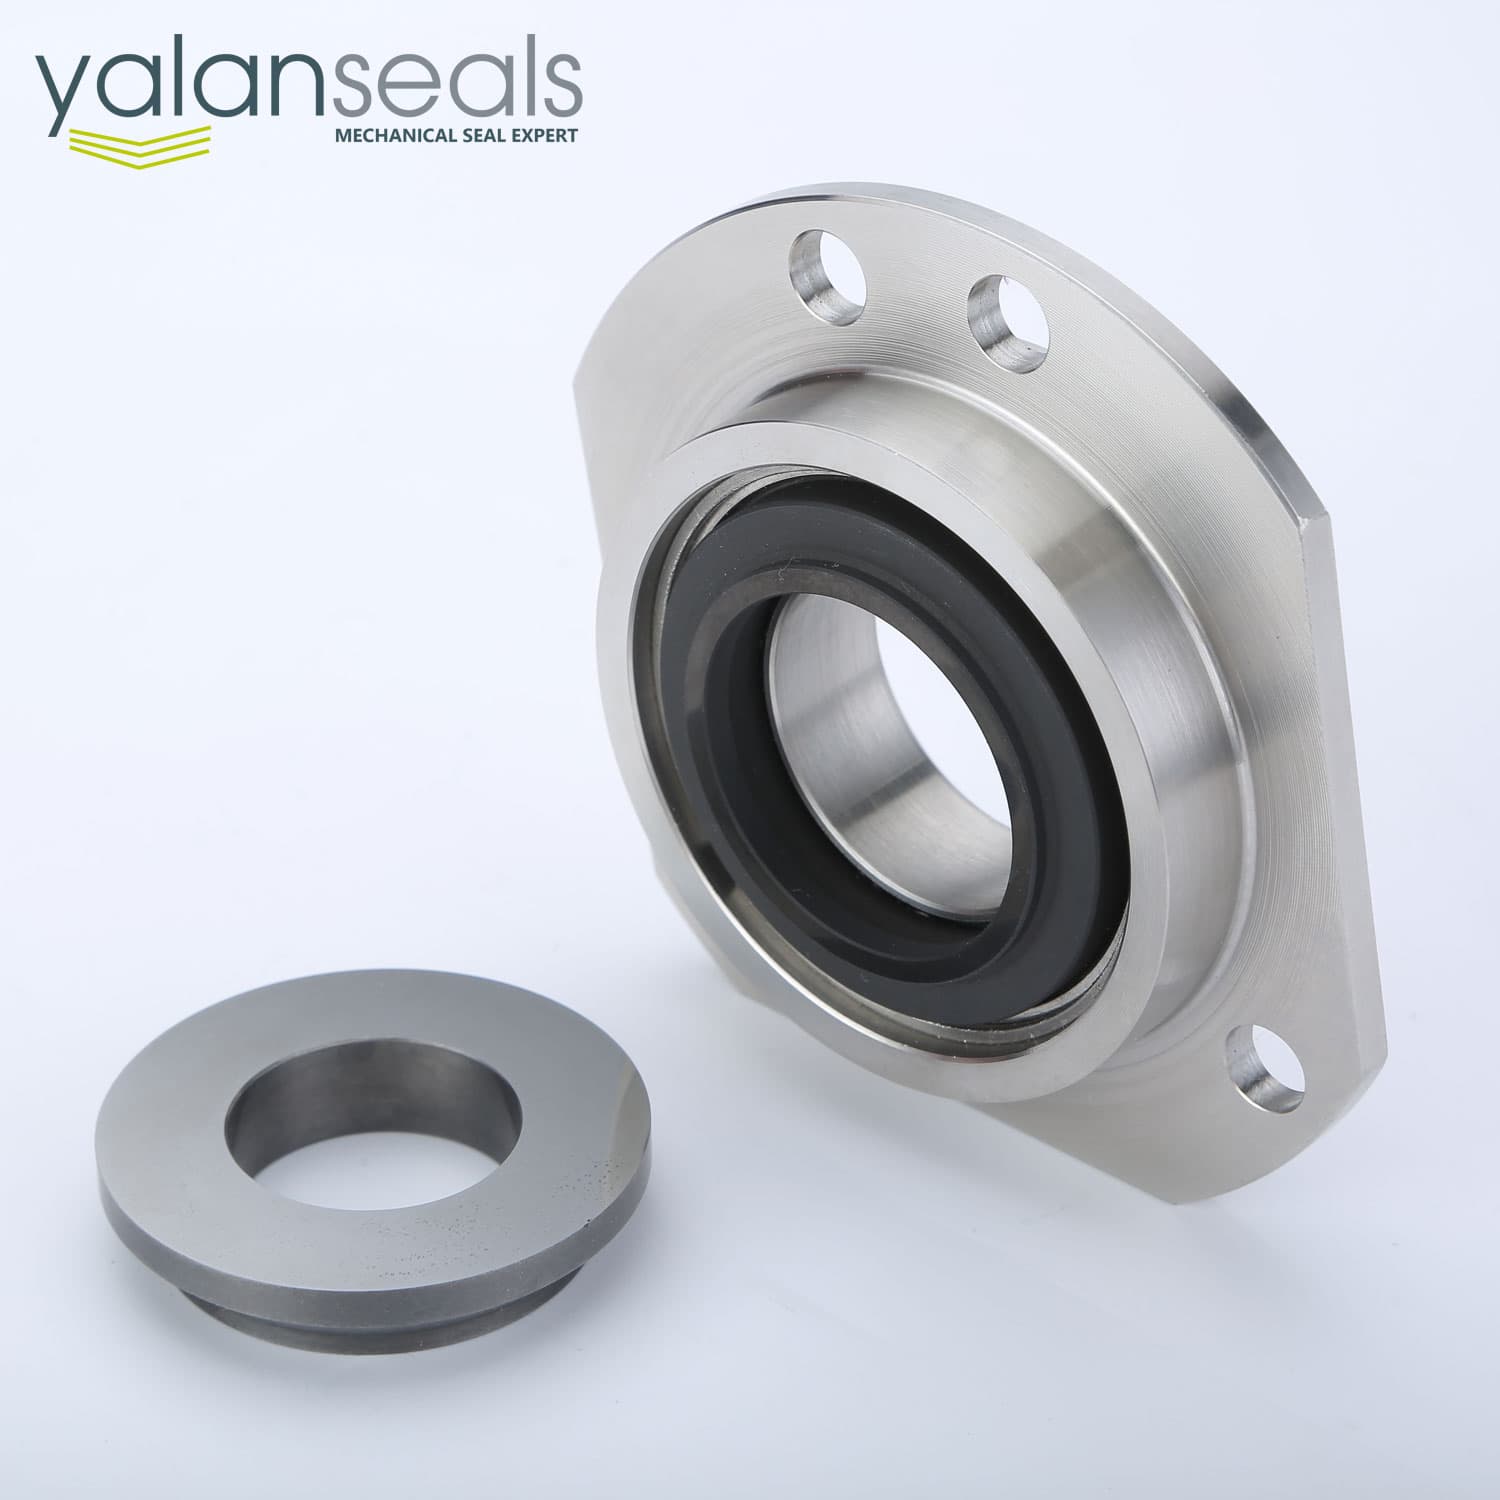 YALAN 318 Mechanical Seal for Sewage Pumps